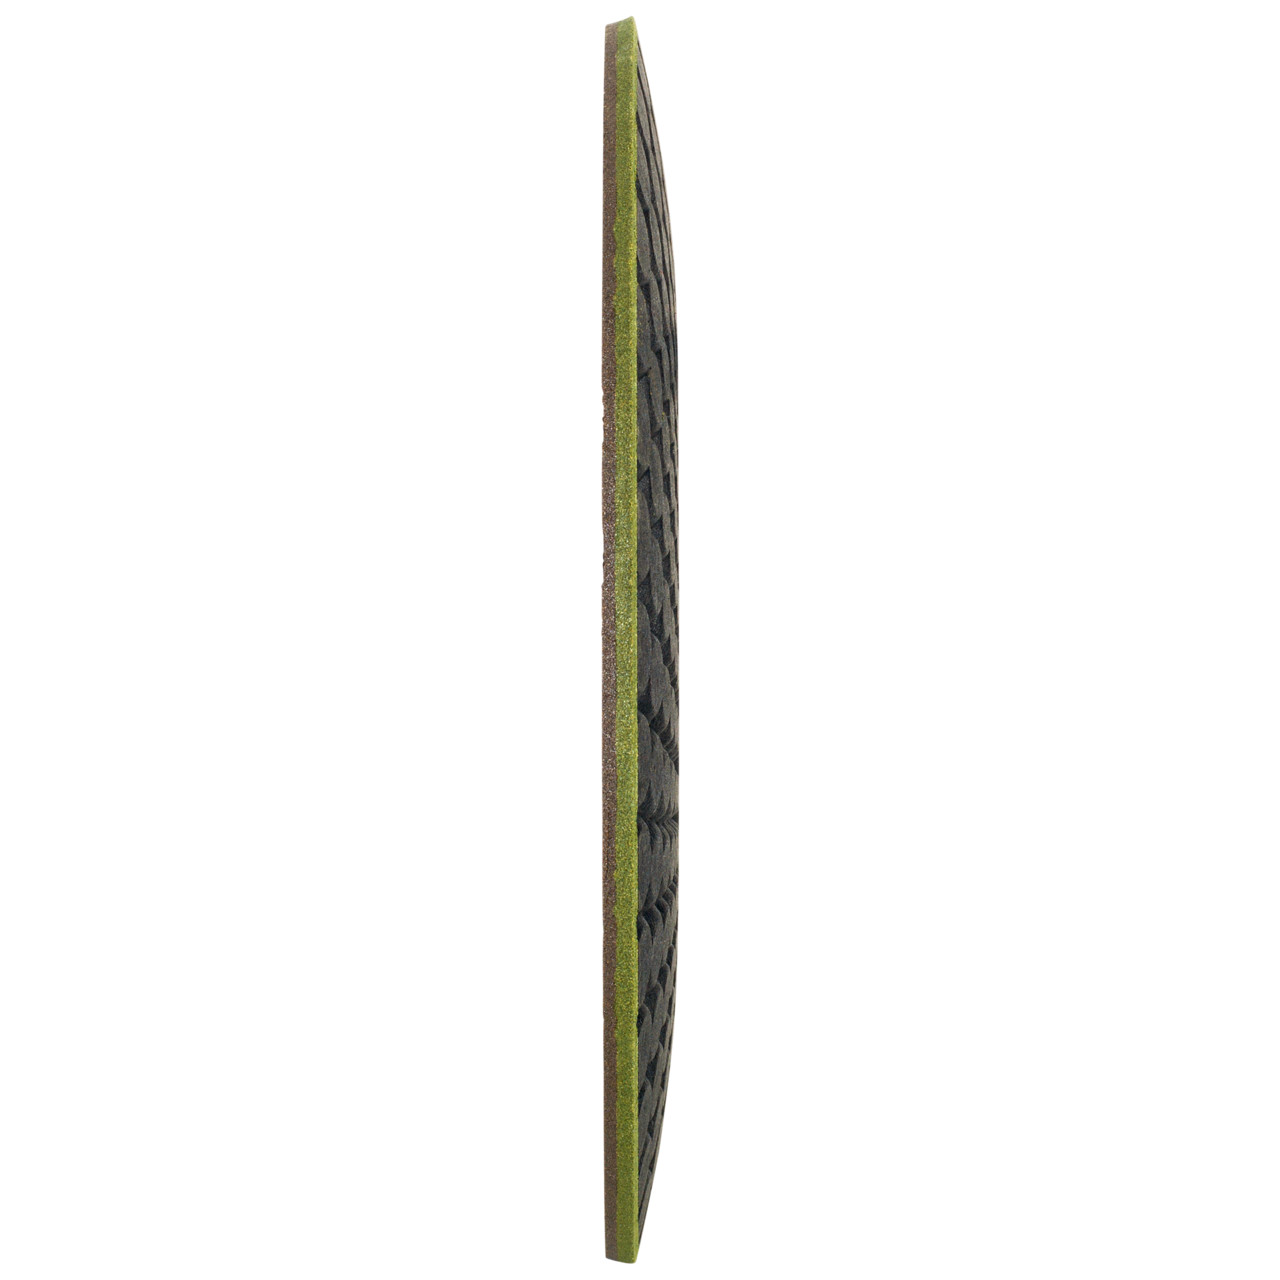 TYROLIT RONDELLER DxH 115x22,23 Per pietra, forma: 29RON (Rondeller®), Art. 908233